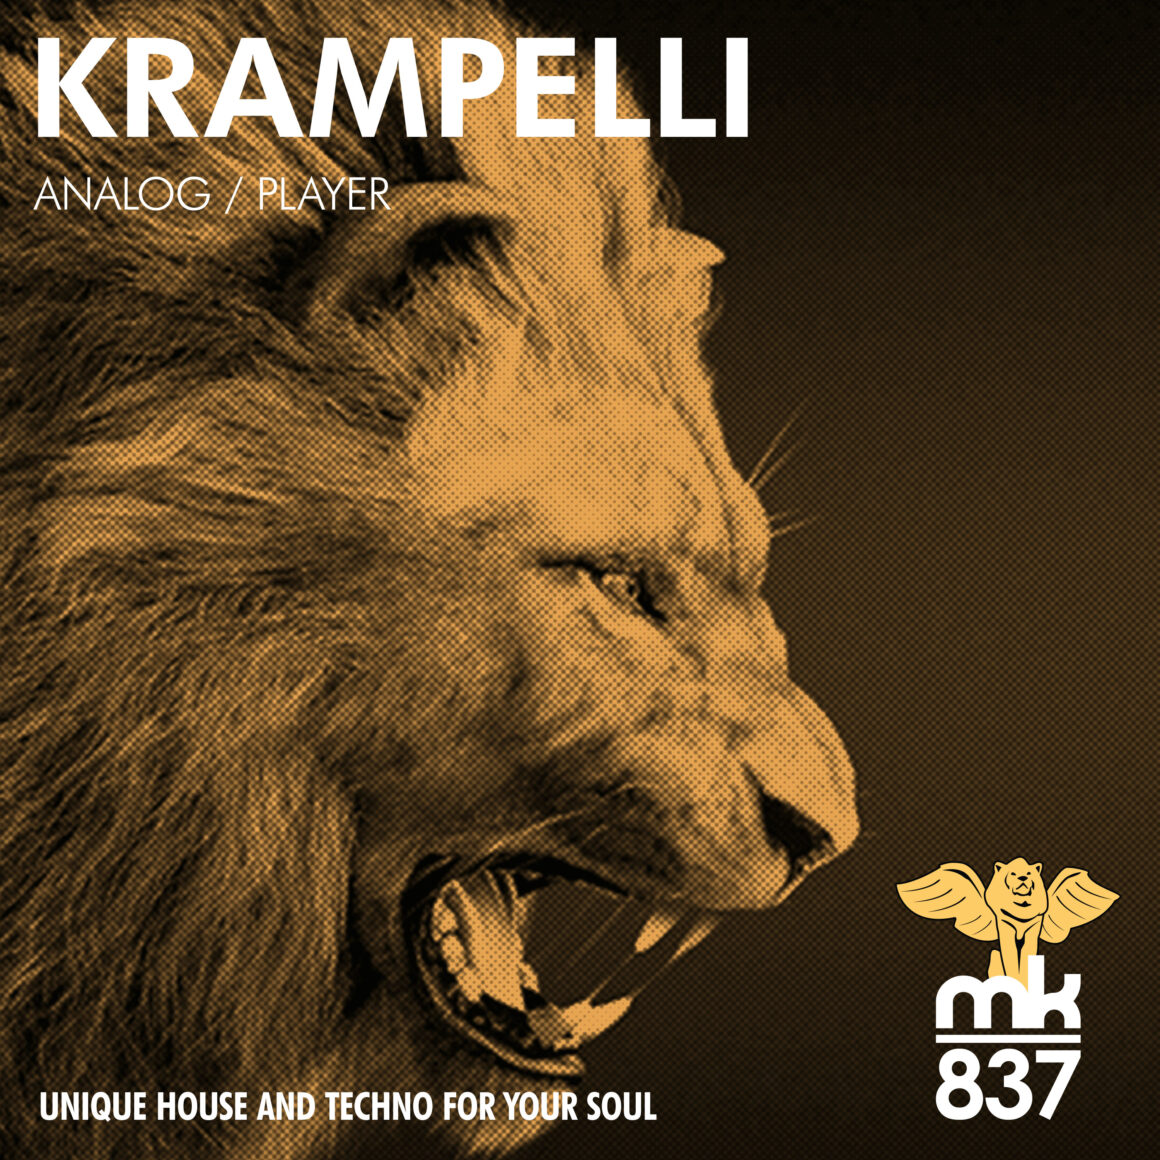 Krampelli - Analog / Player